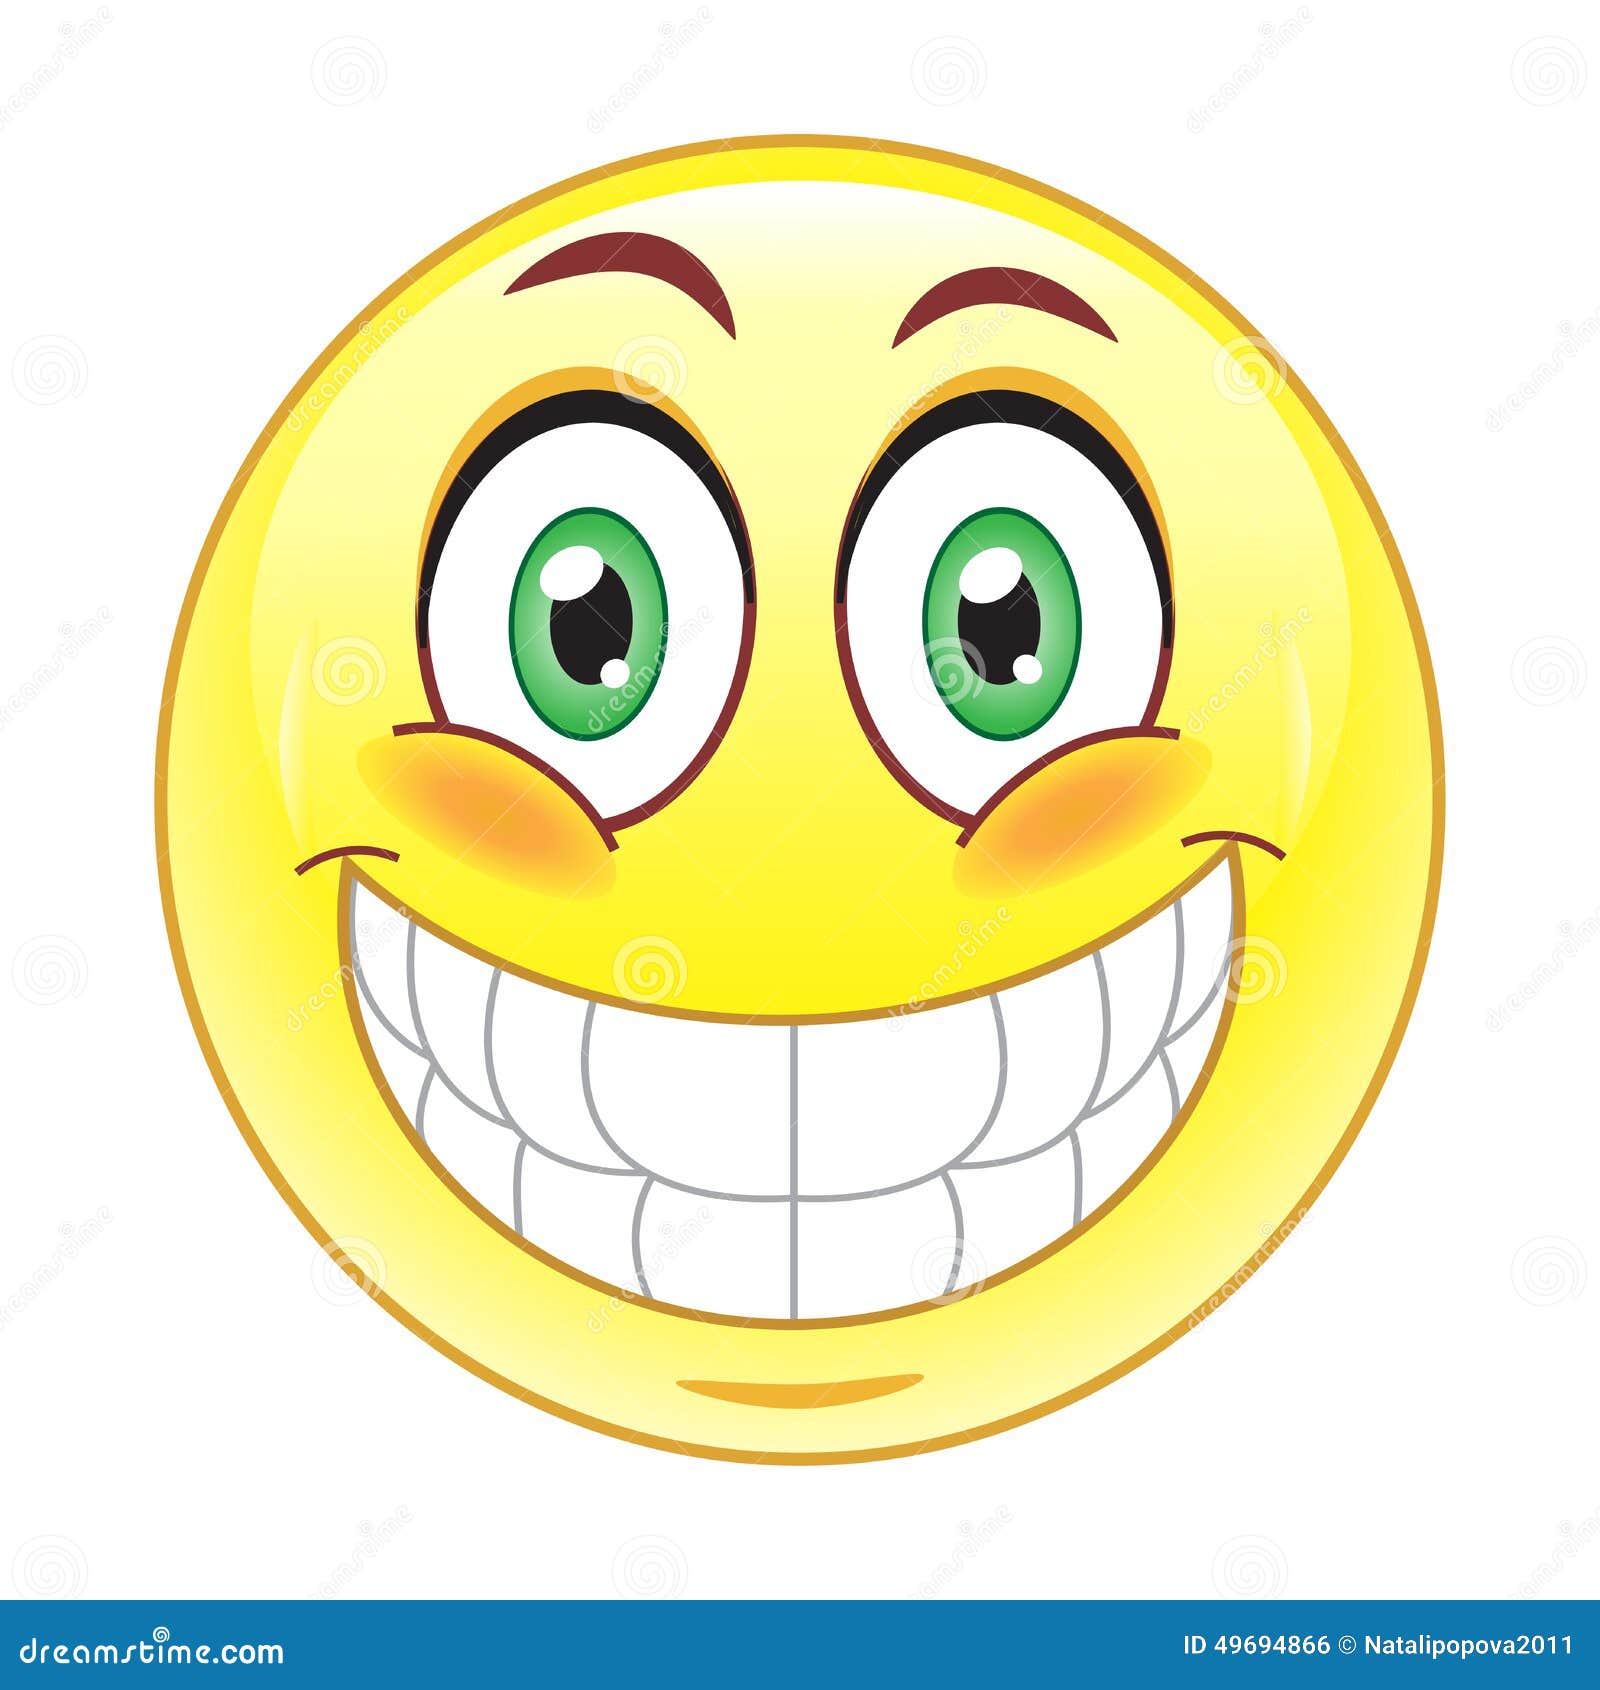 Big Smile Emoticon Stock Vector - Image: 49694866